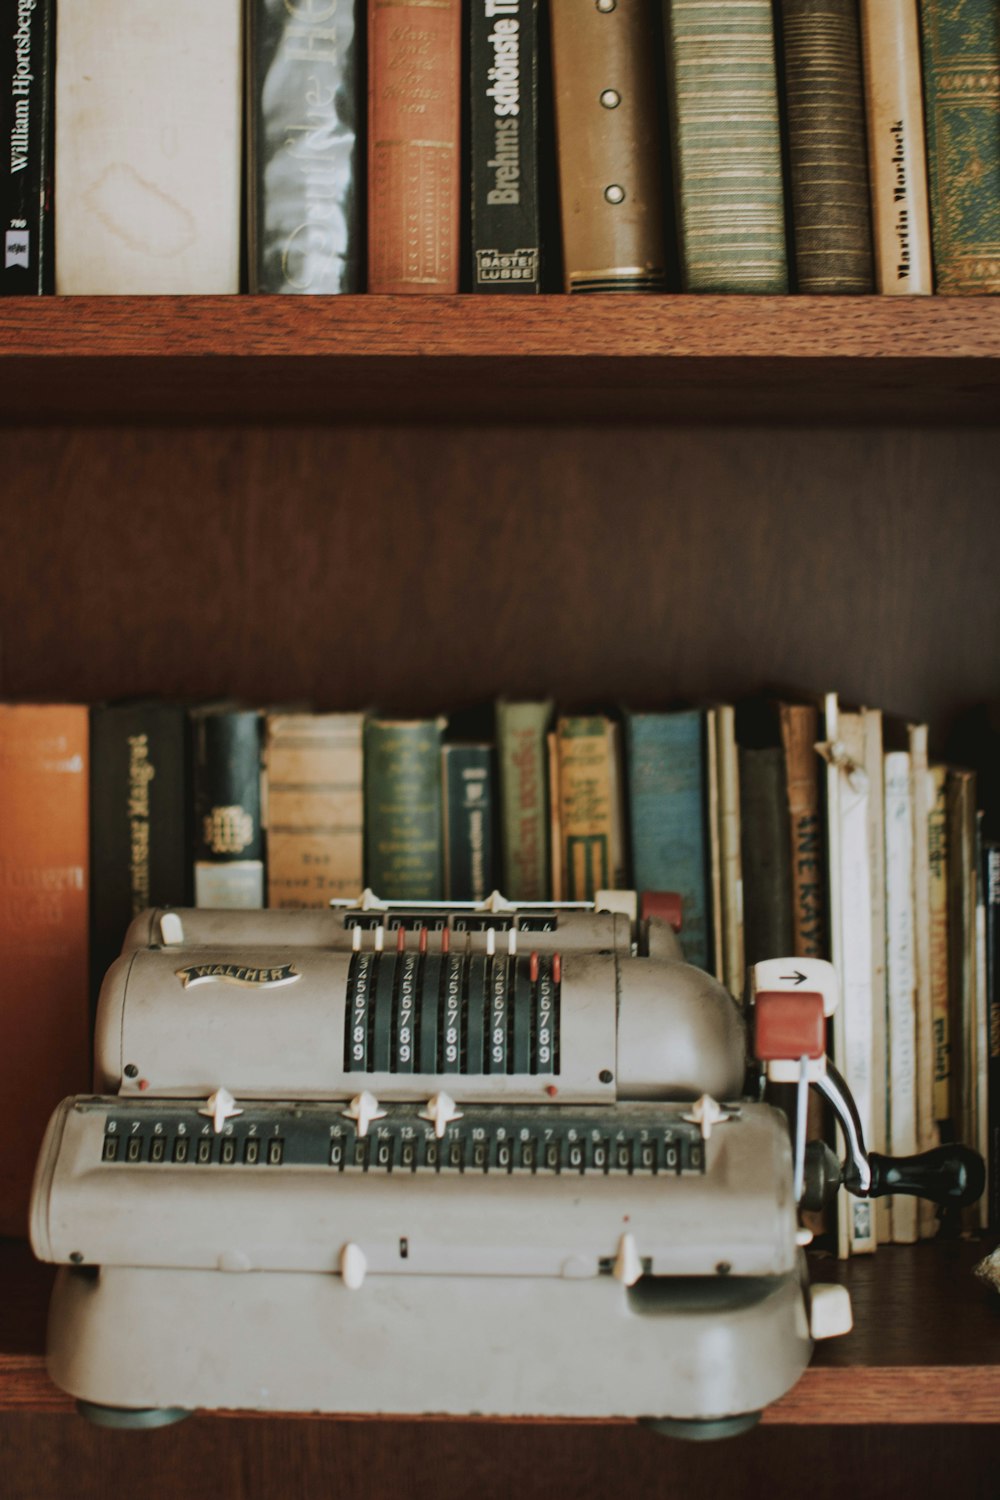 gray typewriter on book shelves